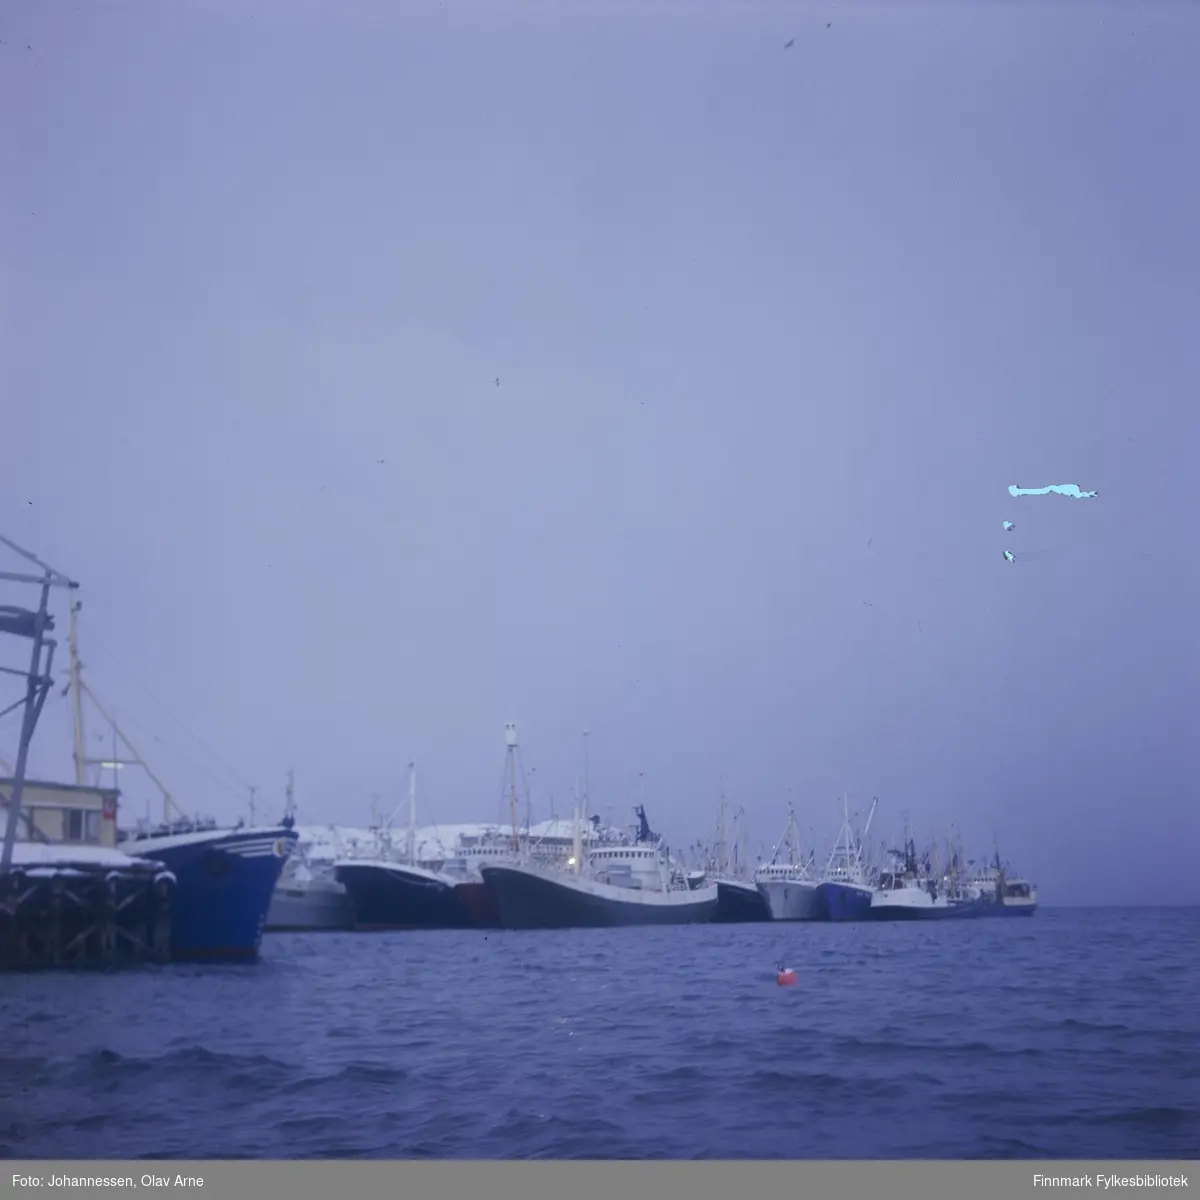 Foto av loddesnurpere i Båtsfjord 

Det gule bygget til venstre er fiskebruket "Produksjonslageret" som ikke lenger eksisterer

Foto trolig tatt på 1960/70-tallet